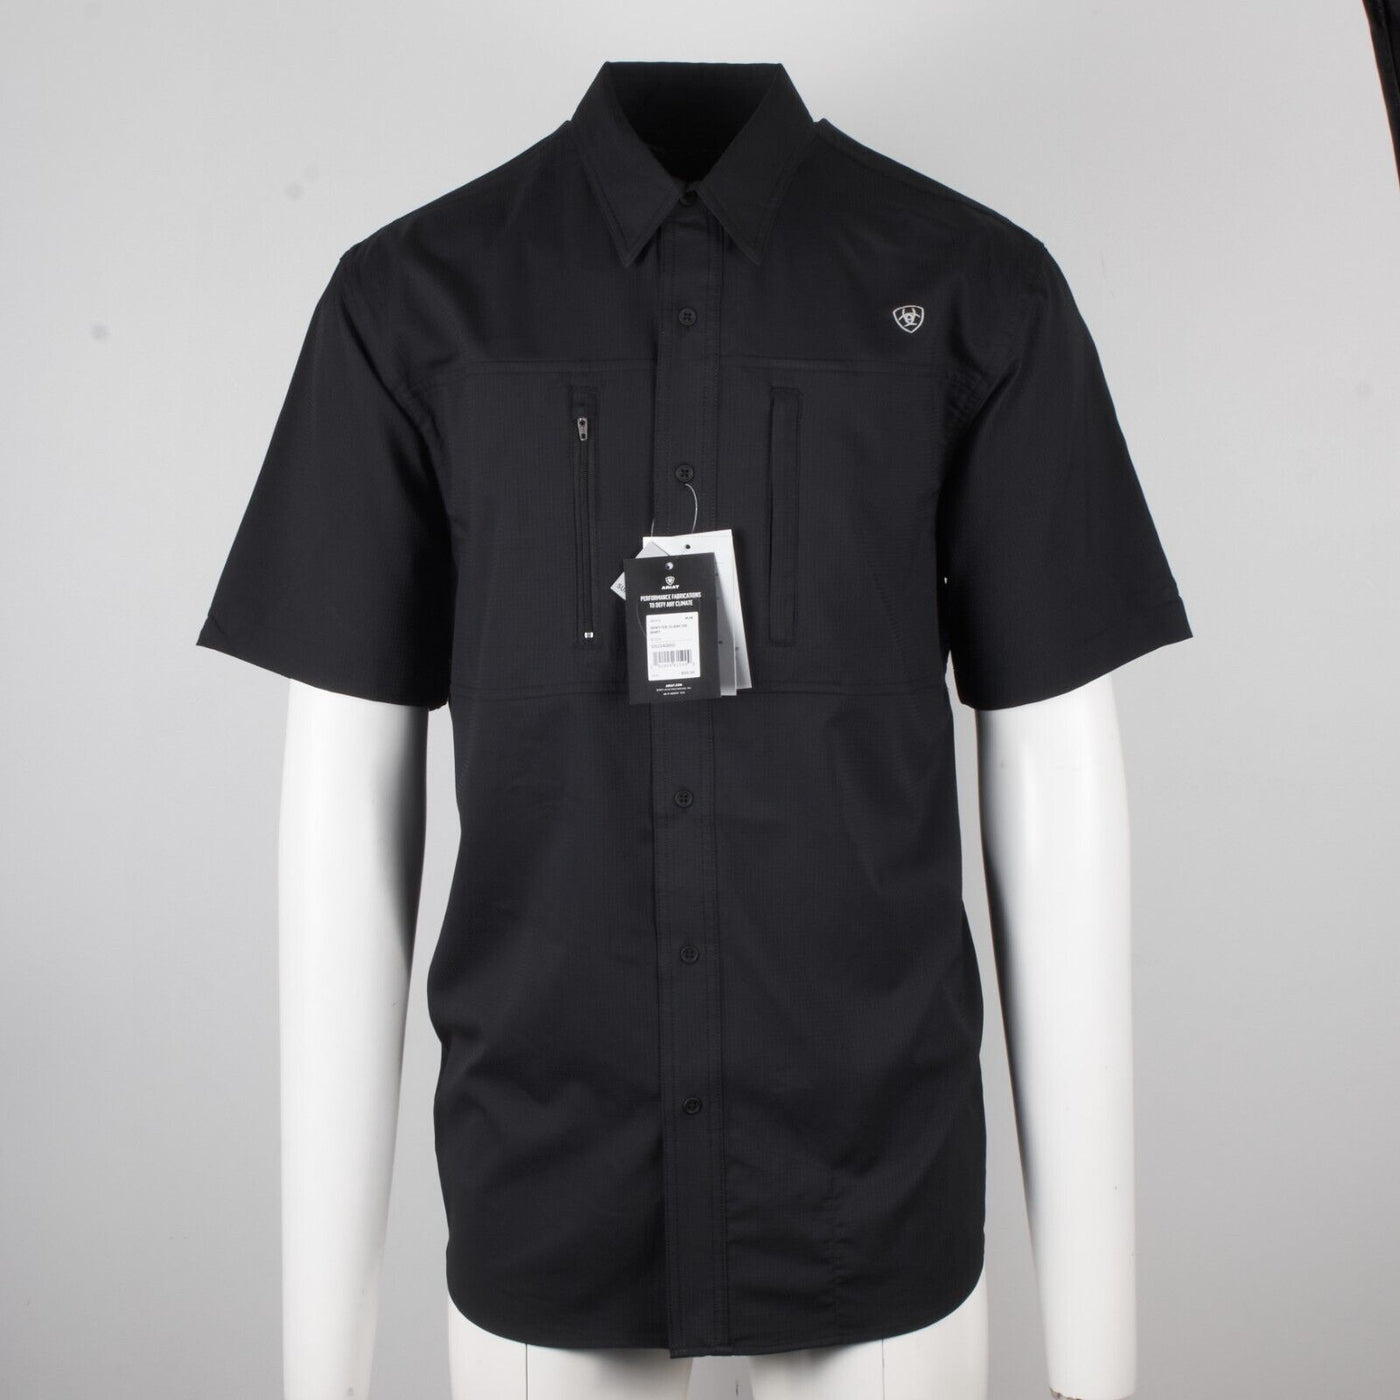 Ariat Men's Black Venttek Climate Tek Cooling UPF 40 S/S Woven Shirt (S02)